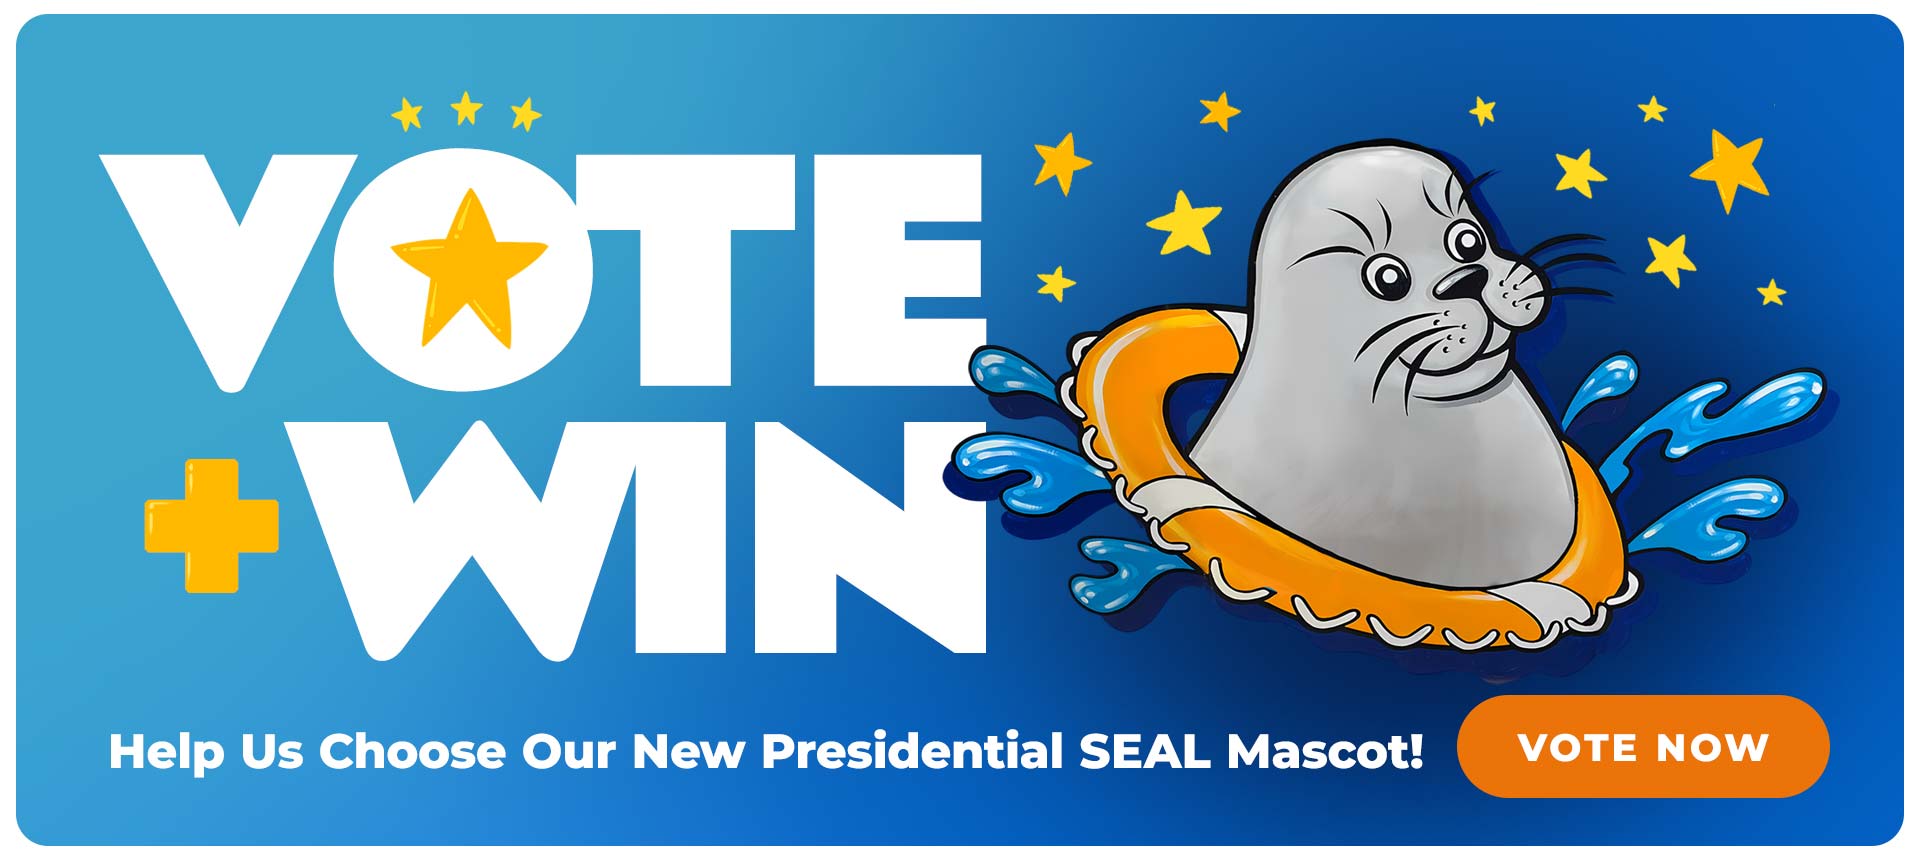 san diego seals mascot vote now